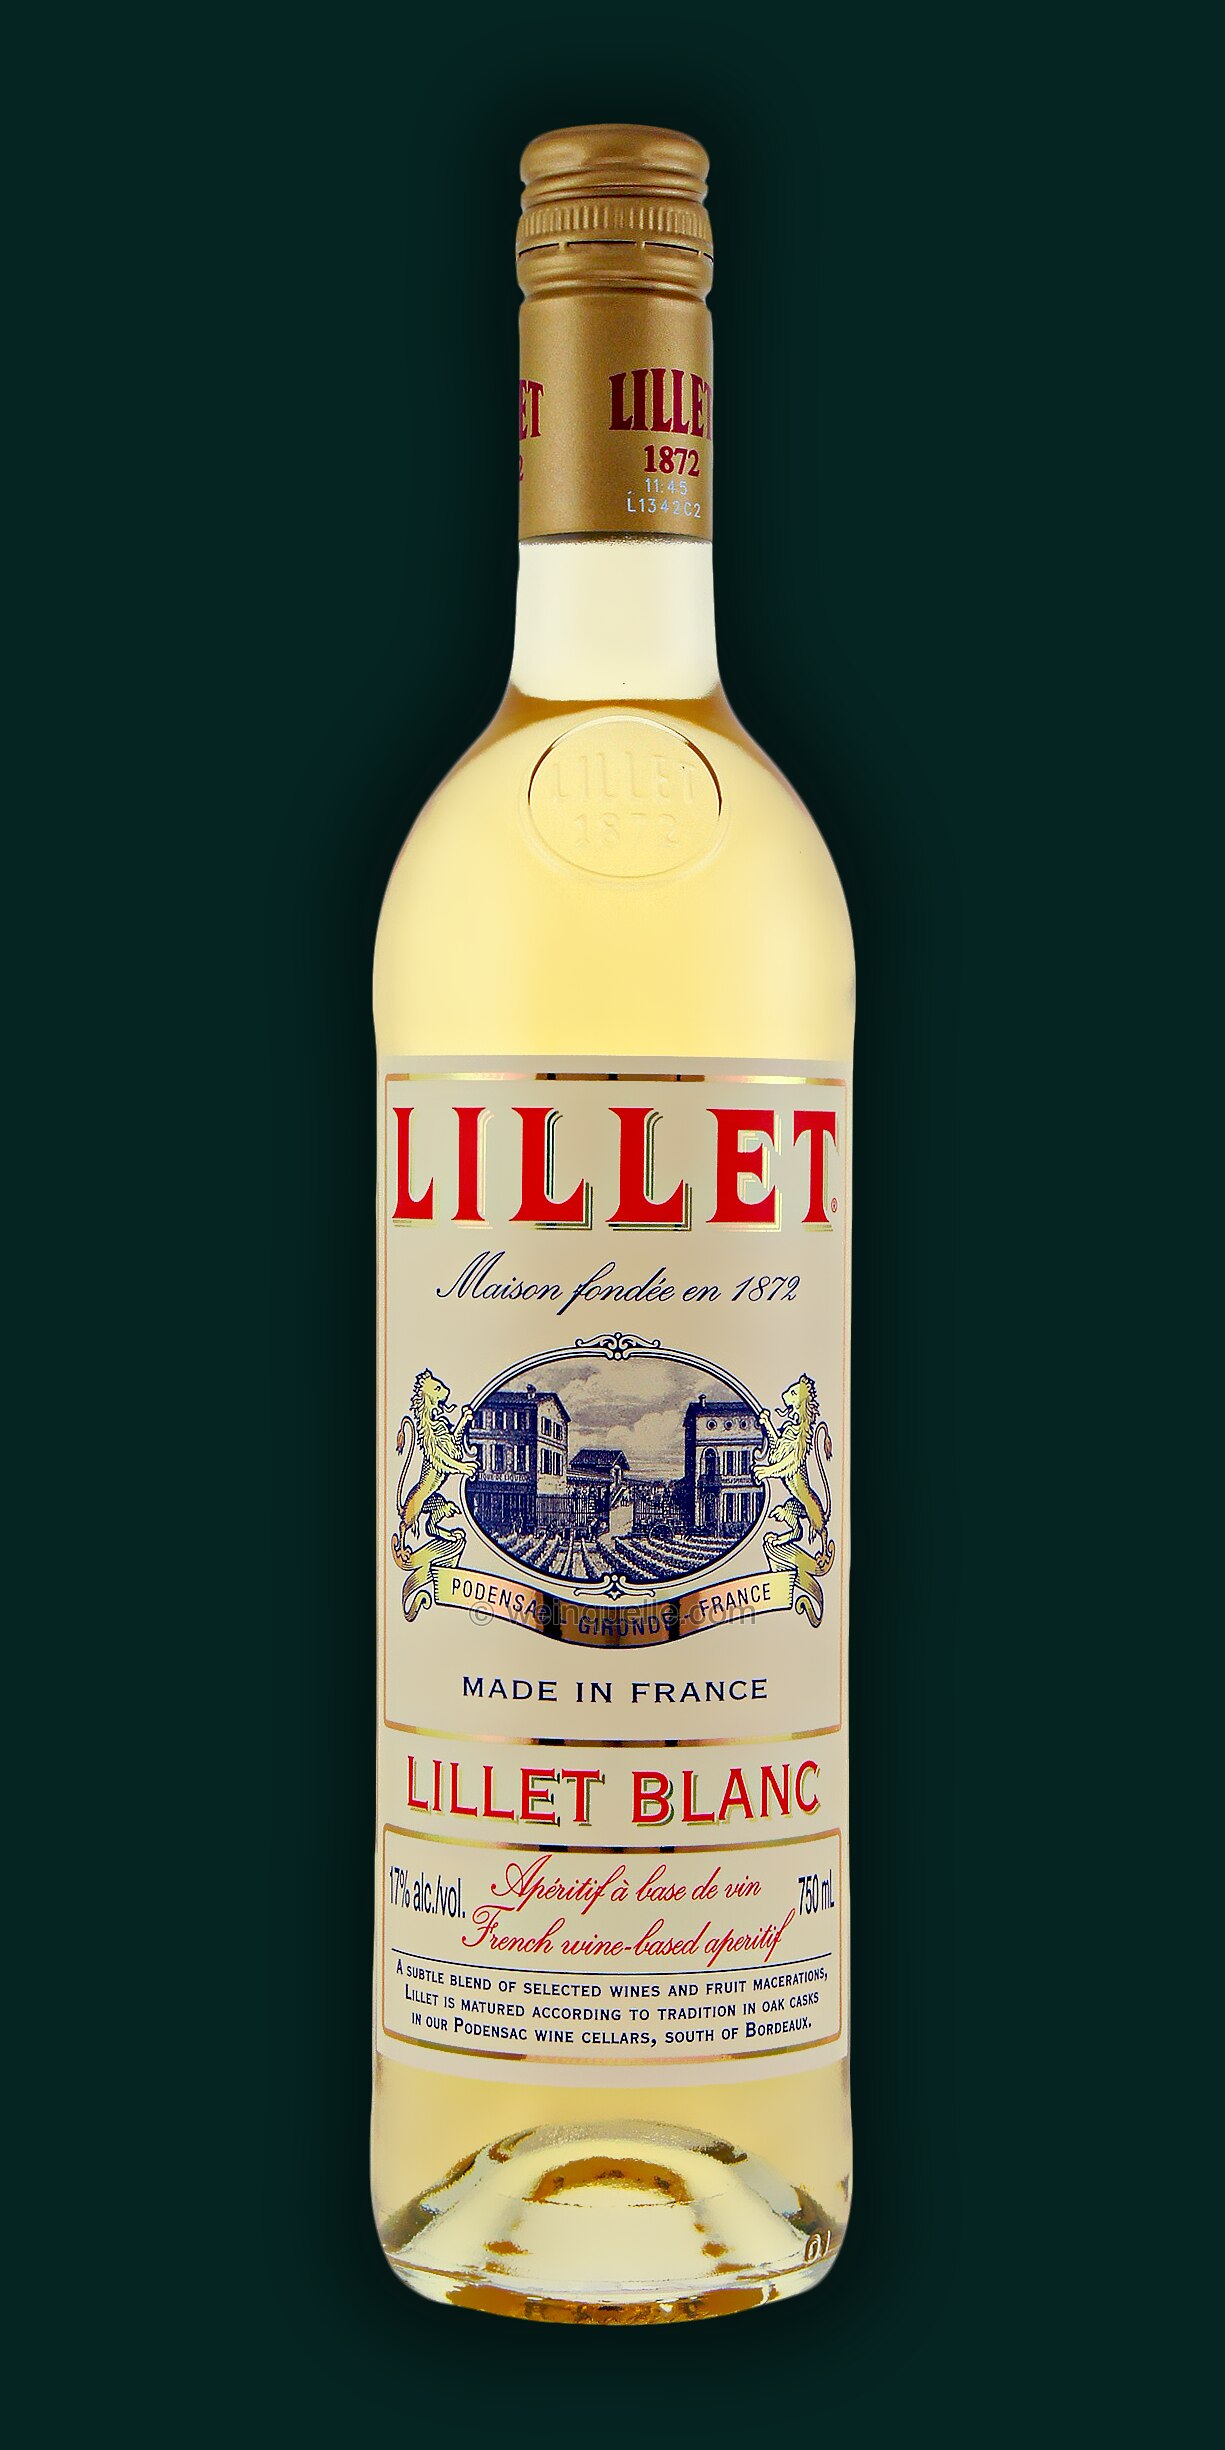 16,50 € Weinquelle Lühmann blanc, Lillet -